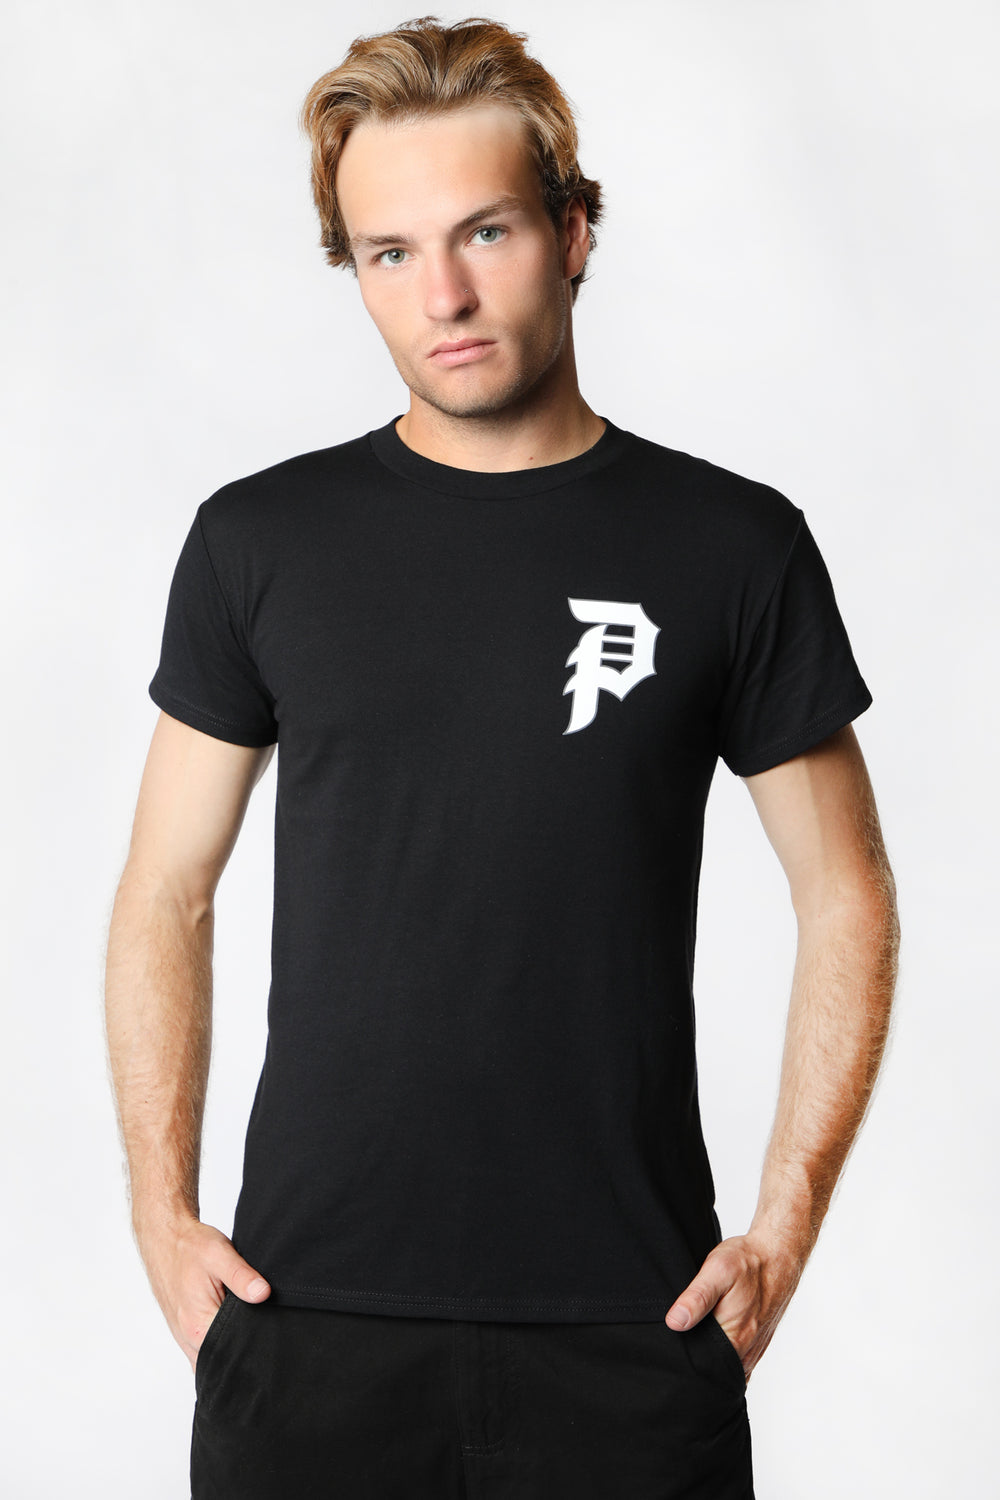 Primitive Tangle T-Shirt Black